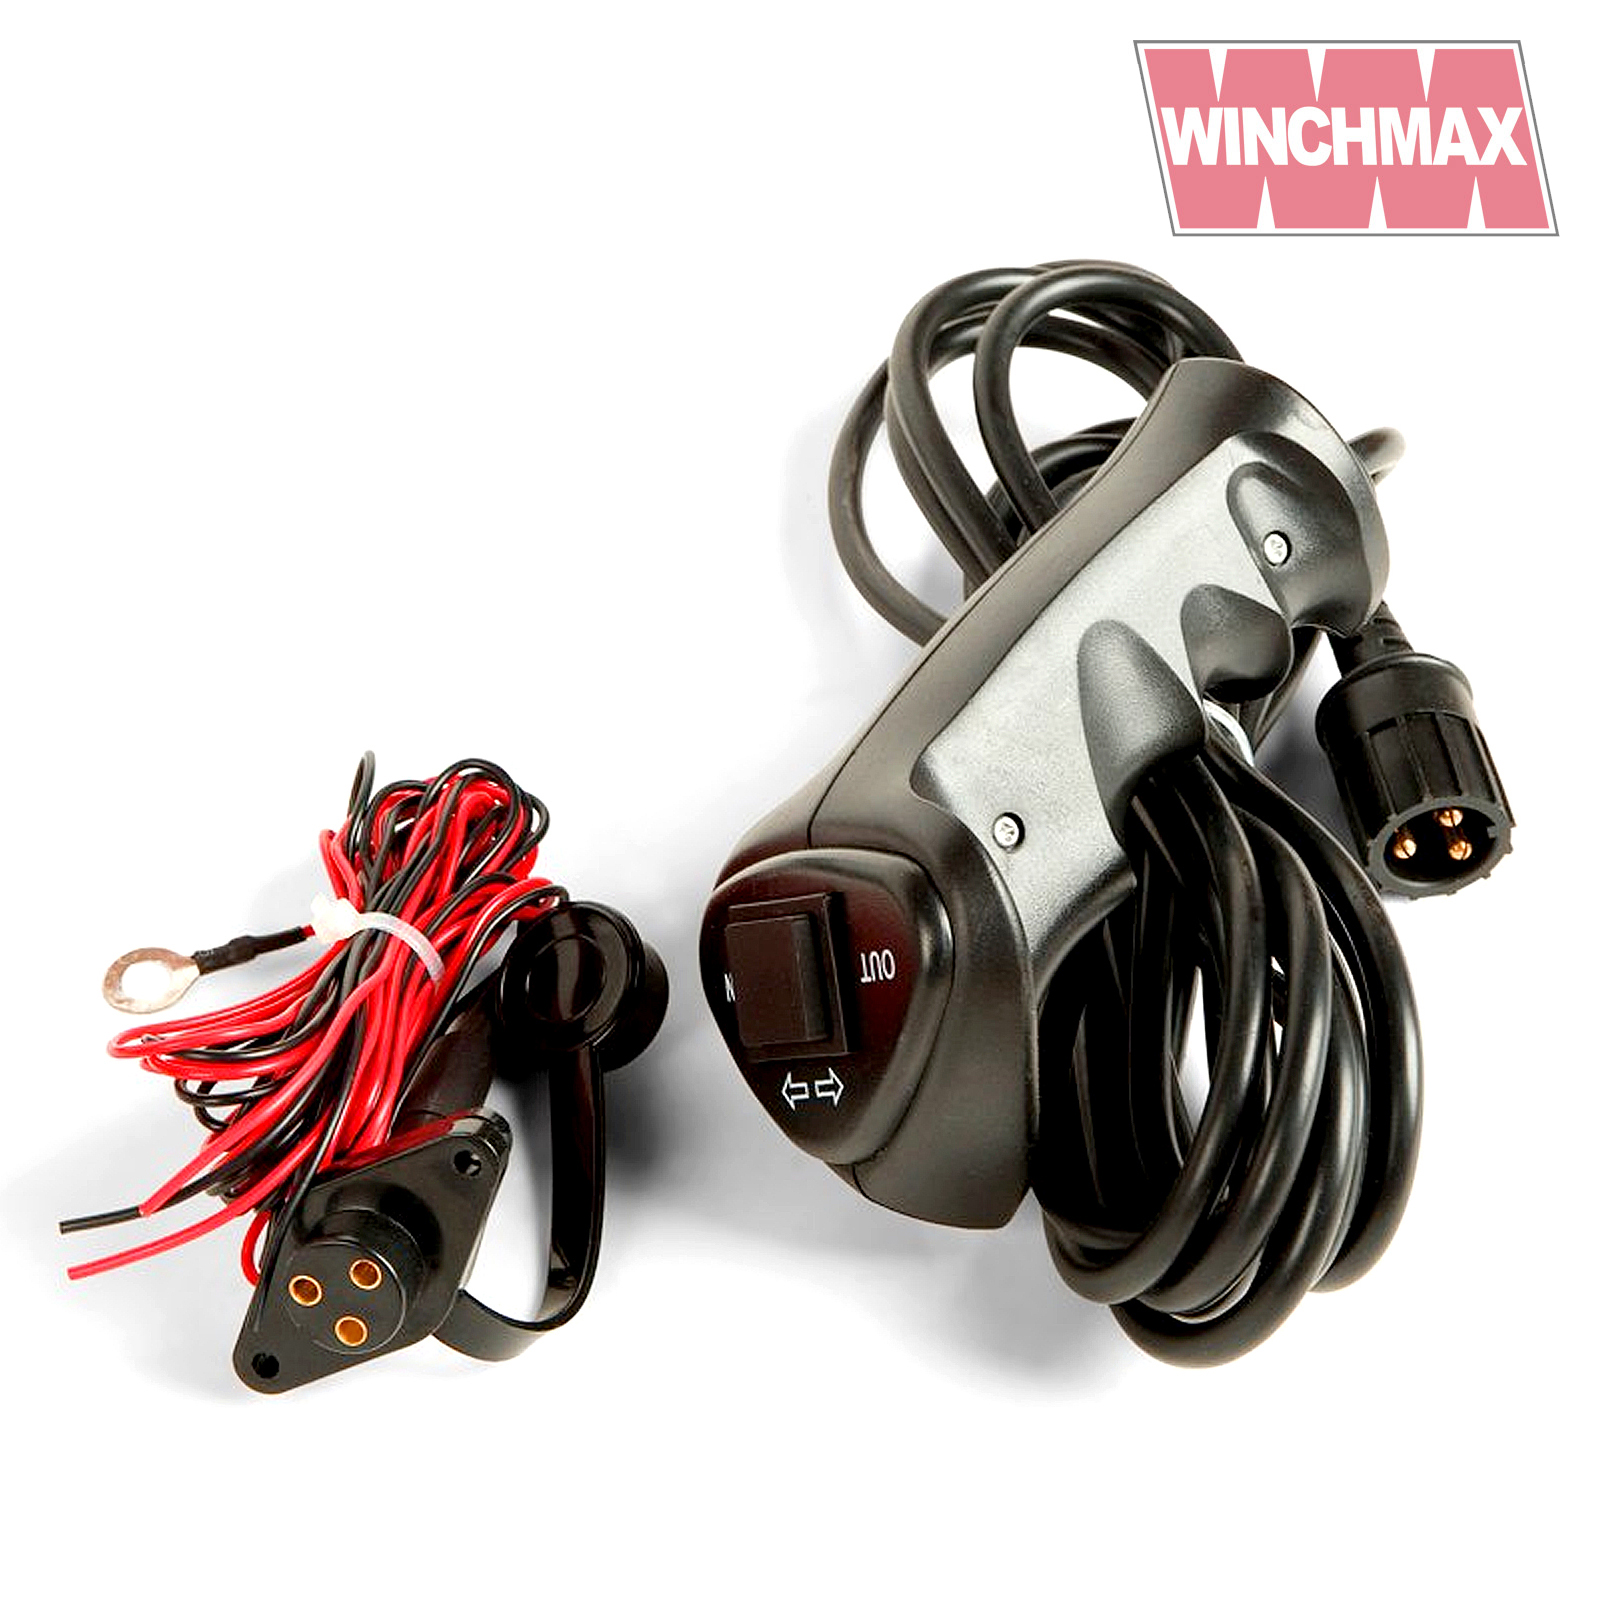 Winchmax 2000lb Hydraulic Winch and Control System